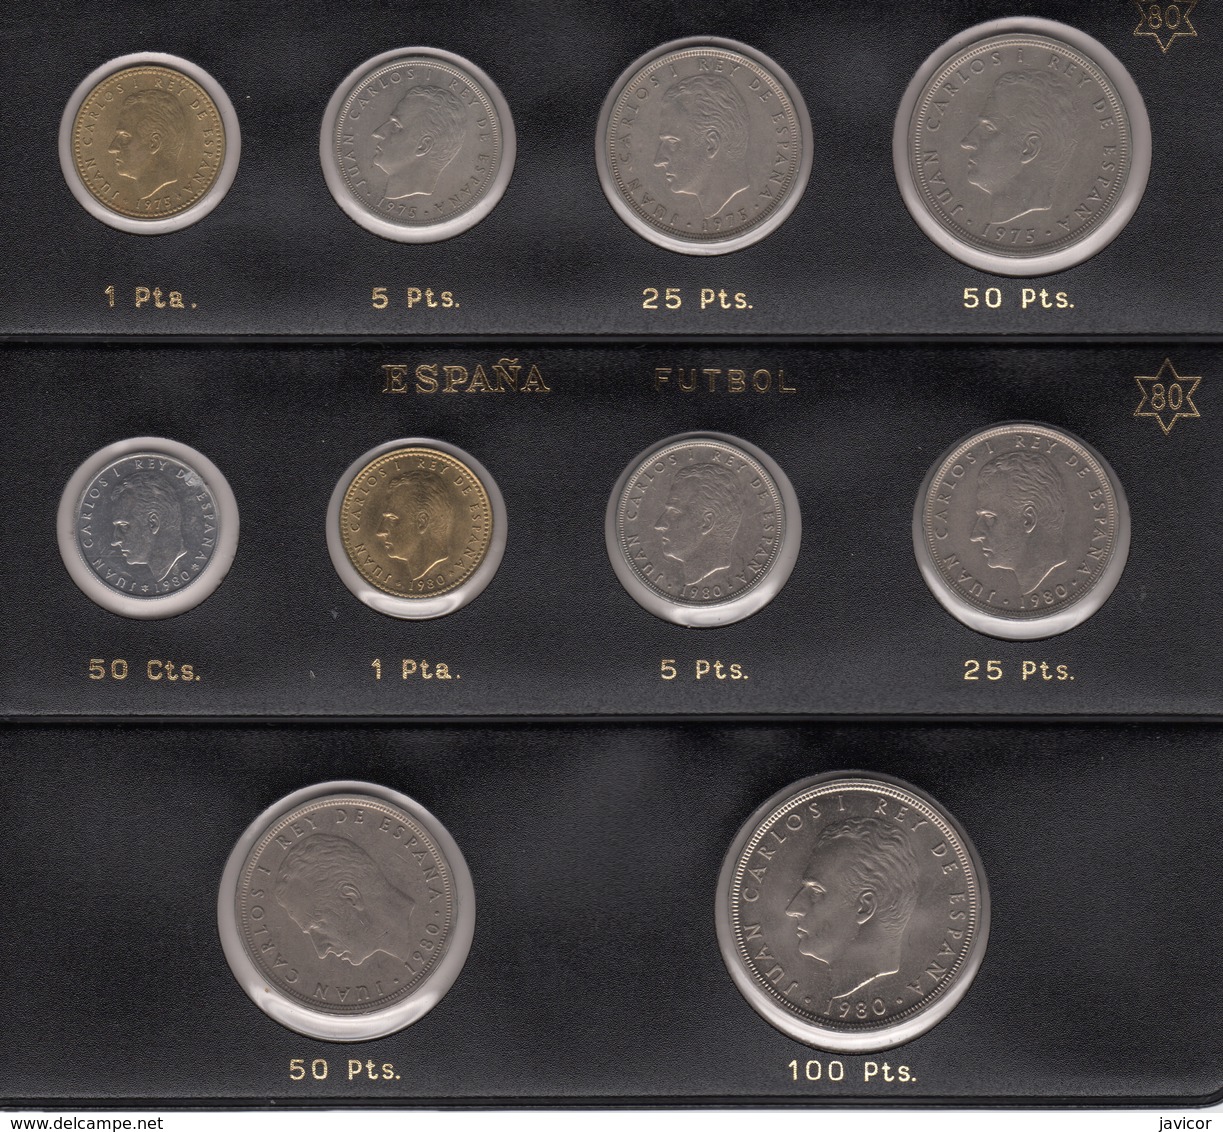 1975 Juan Carlos Y 1980 10 Monedas De La Foto SC - Collections